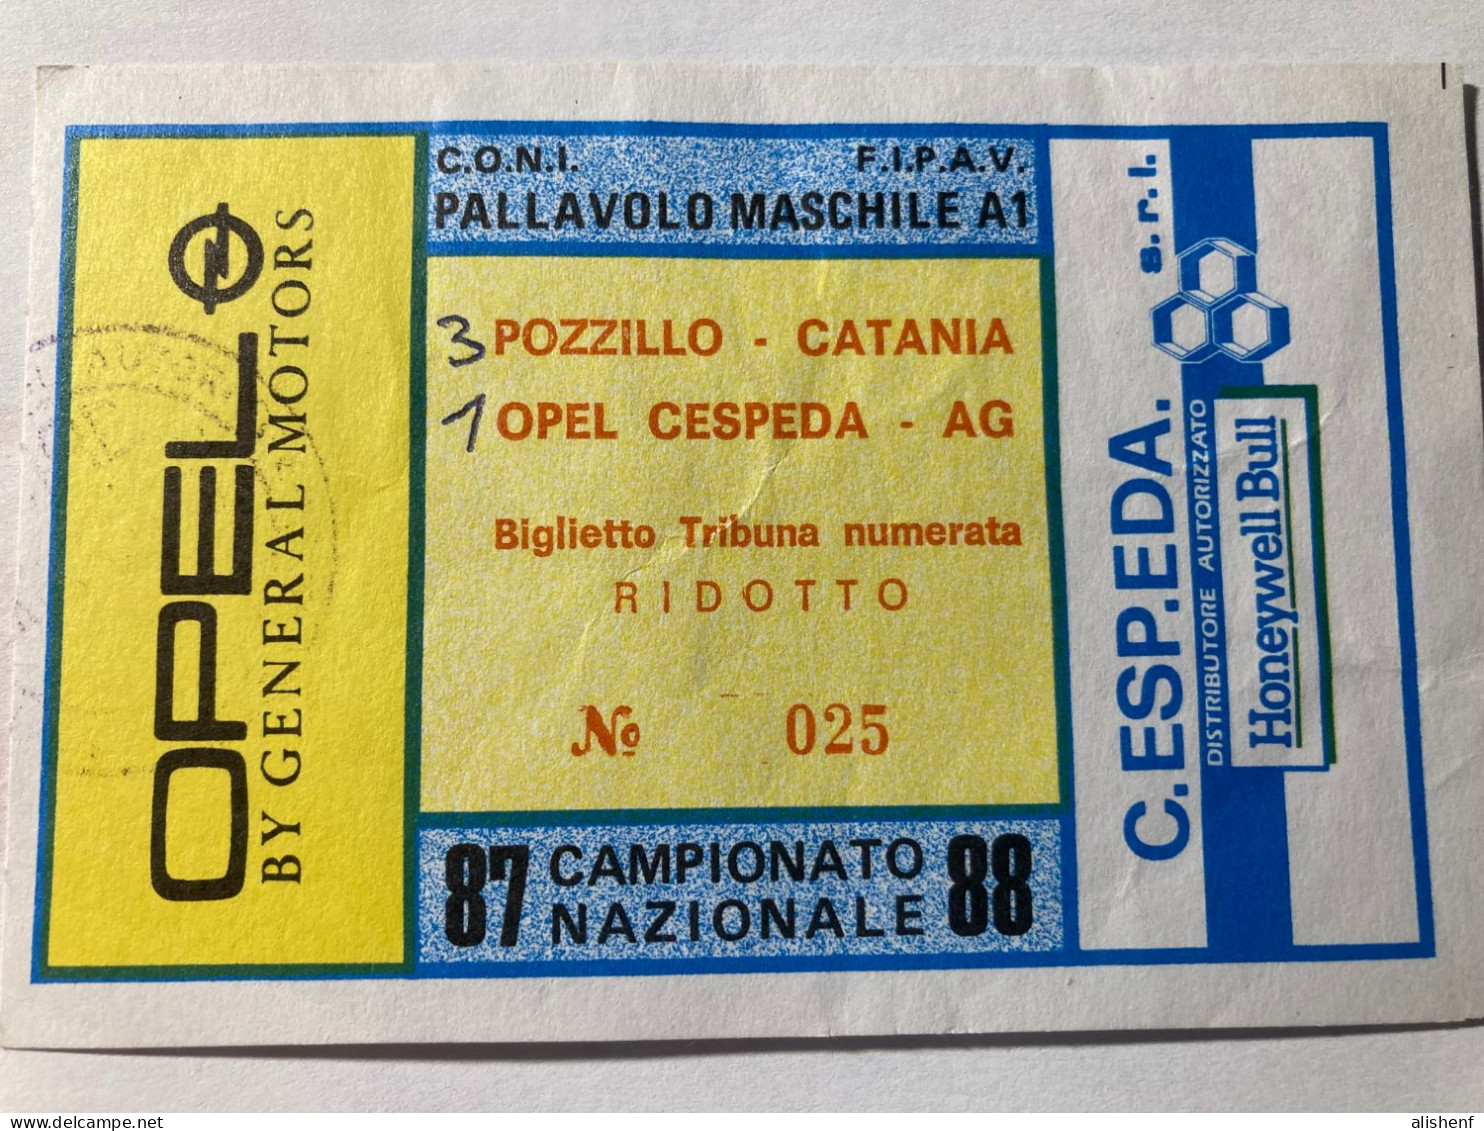 Biglietto Pallavolo Mascile Serie A1 Opel Cespeda Agrigento Pozzillo Catania Campionato 1987-88 - Eintrittskarten